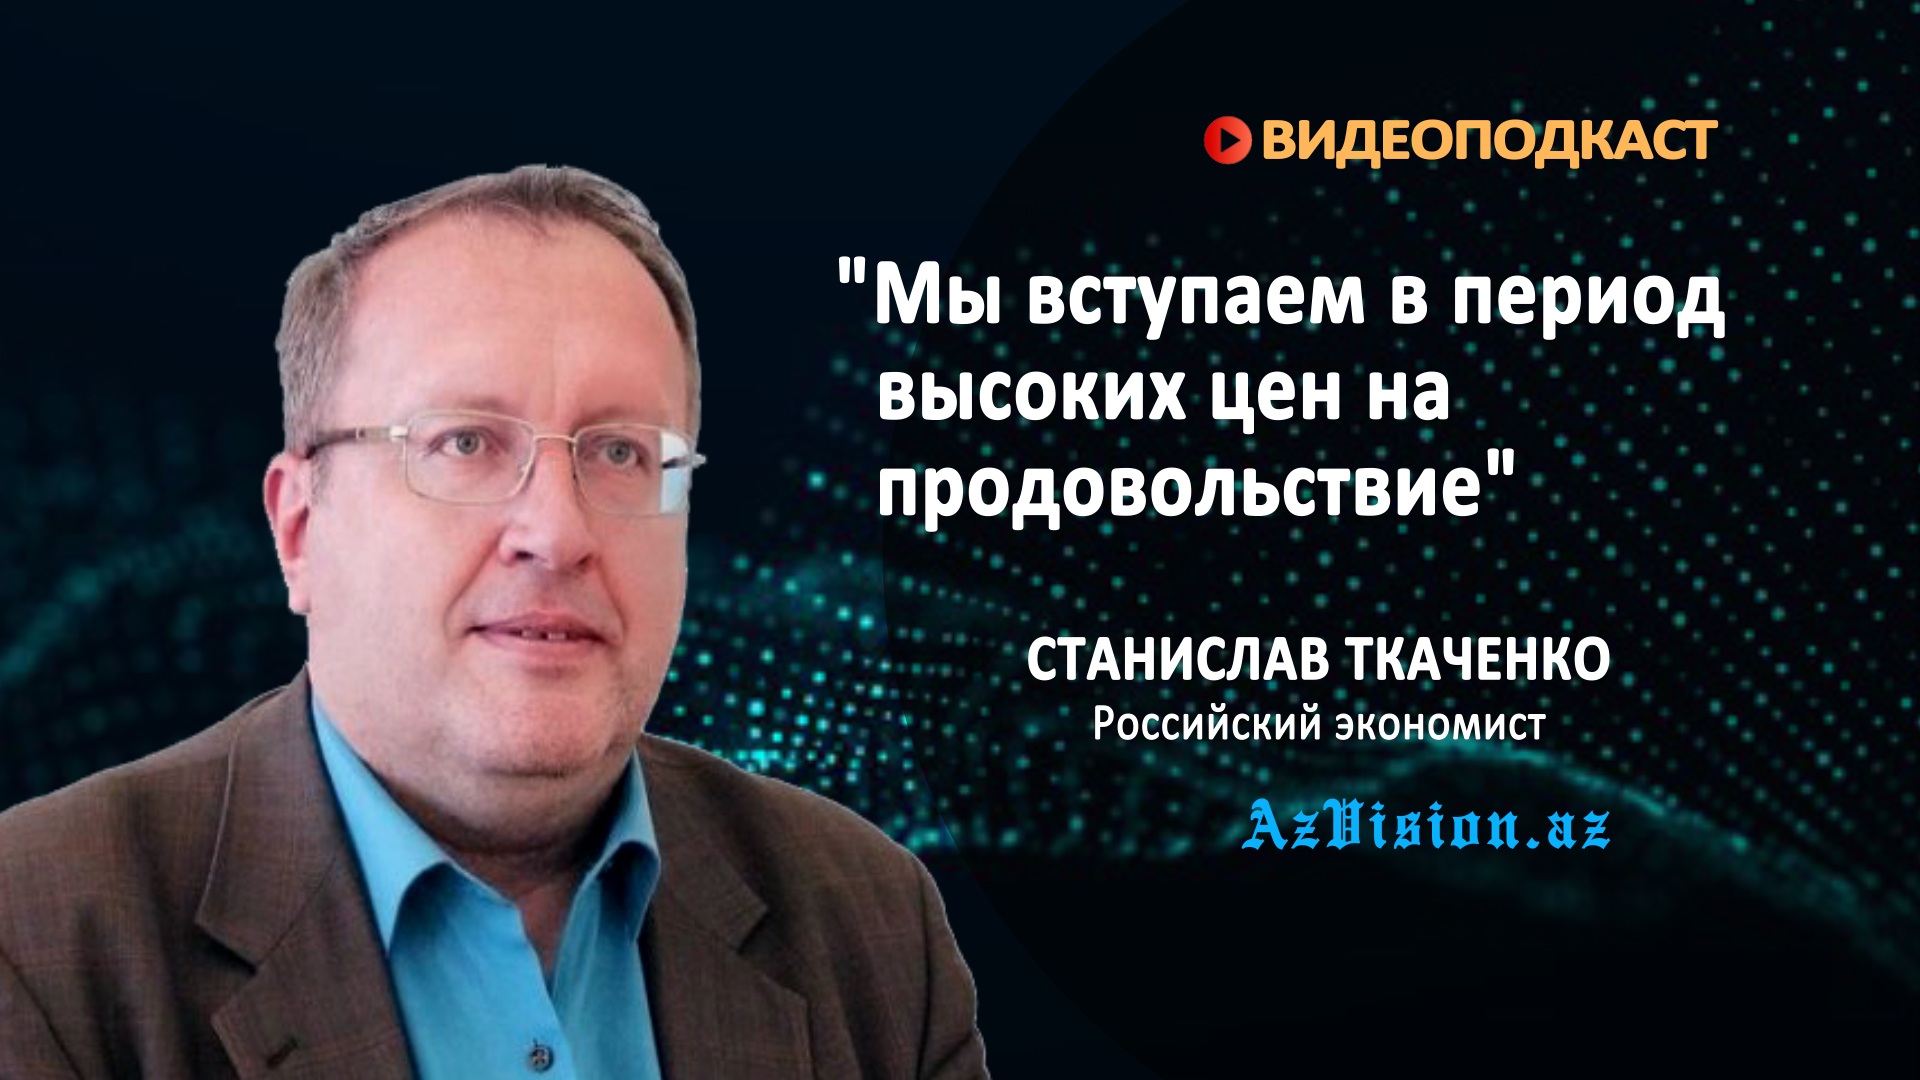 Станислав Ткаченко: "Я думаю, что мы вступаем в период высоких цен на продовольствие" - ВИДЕОИНТЕРВЬЮ